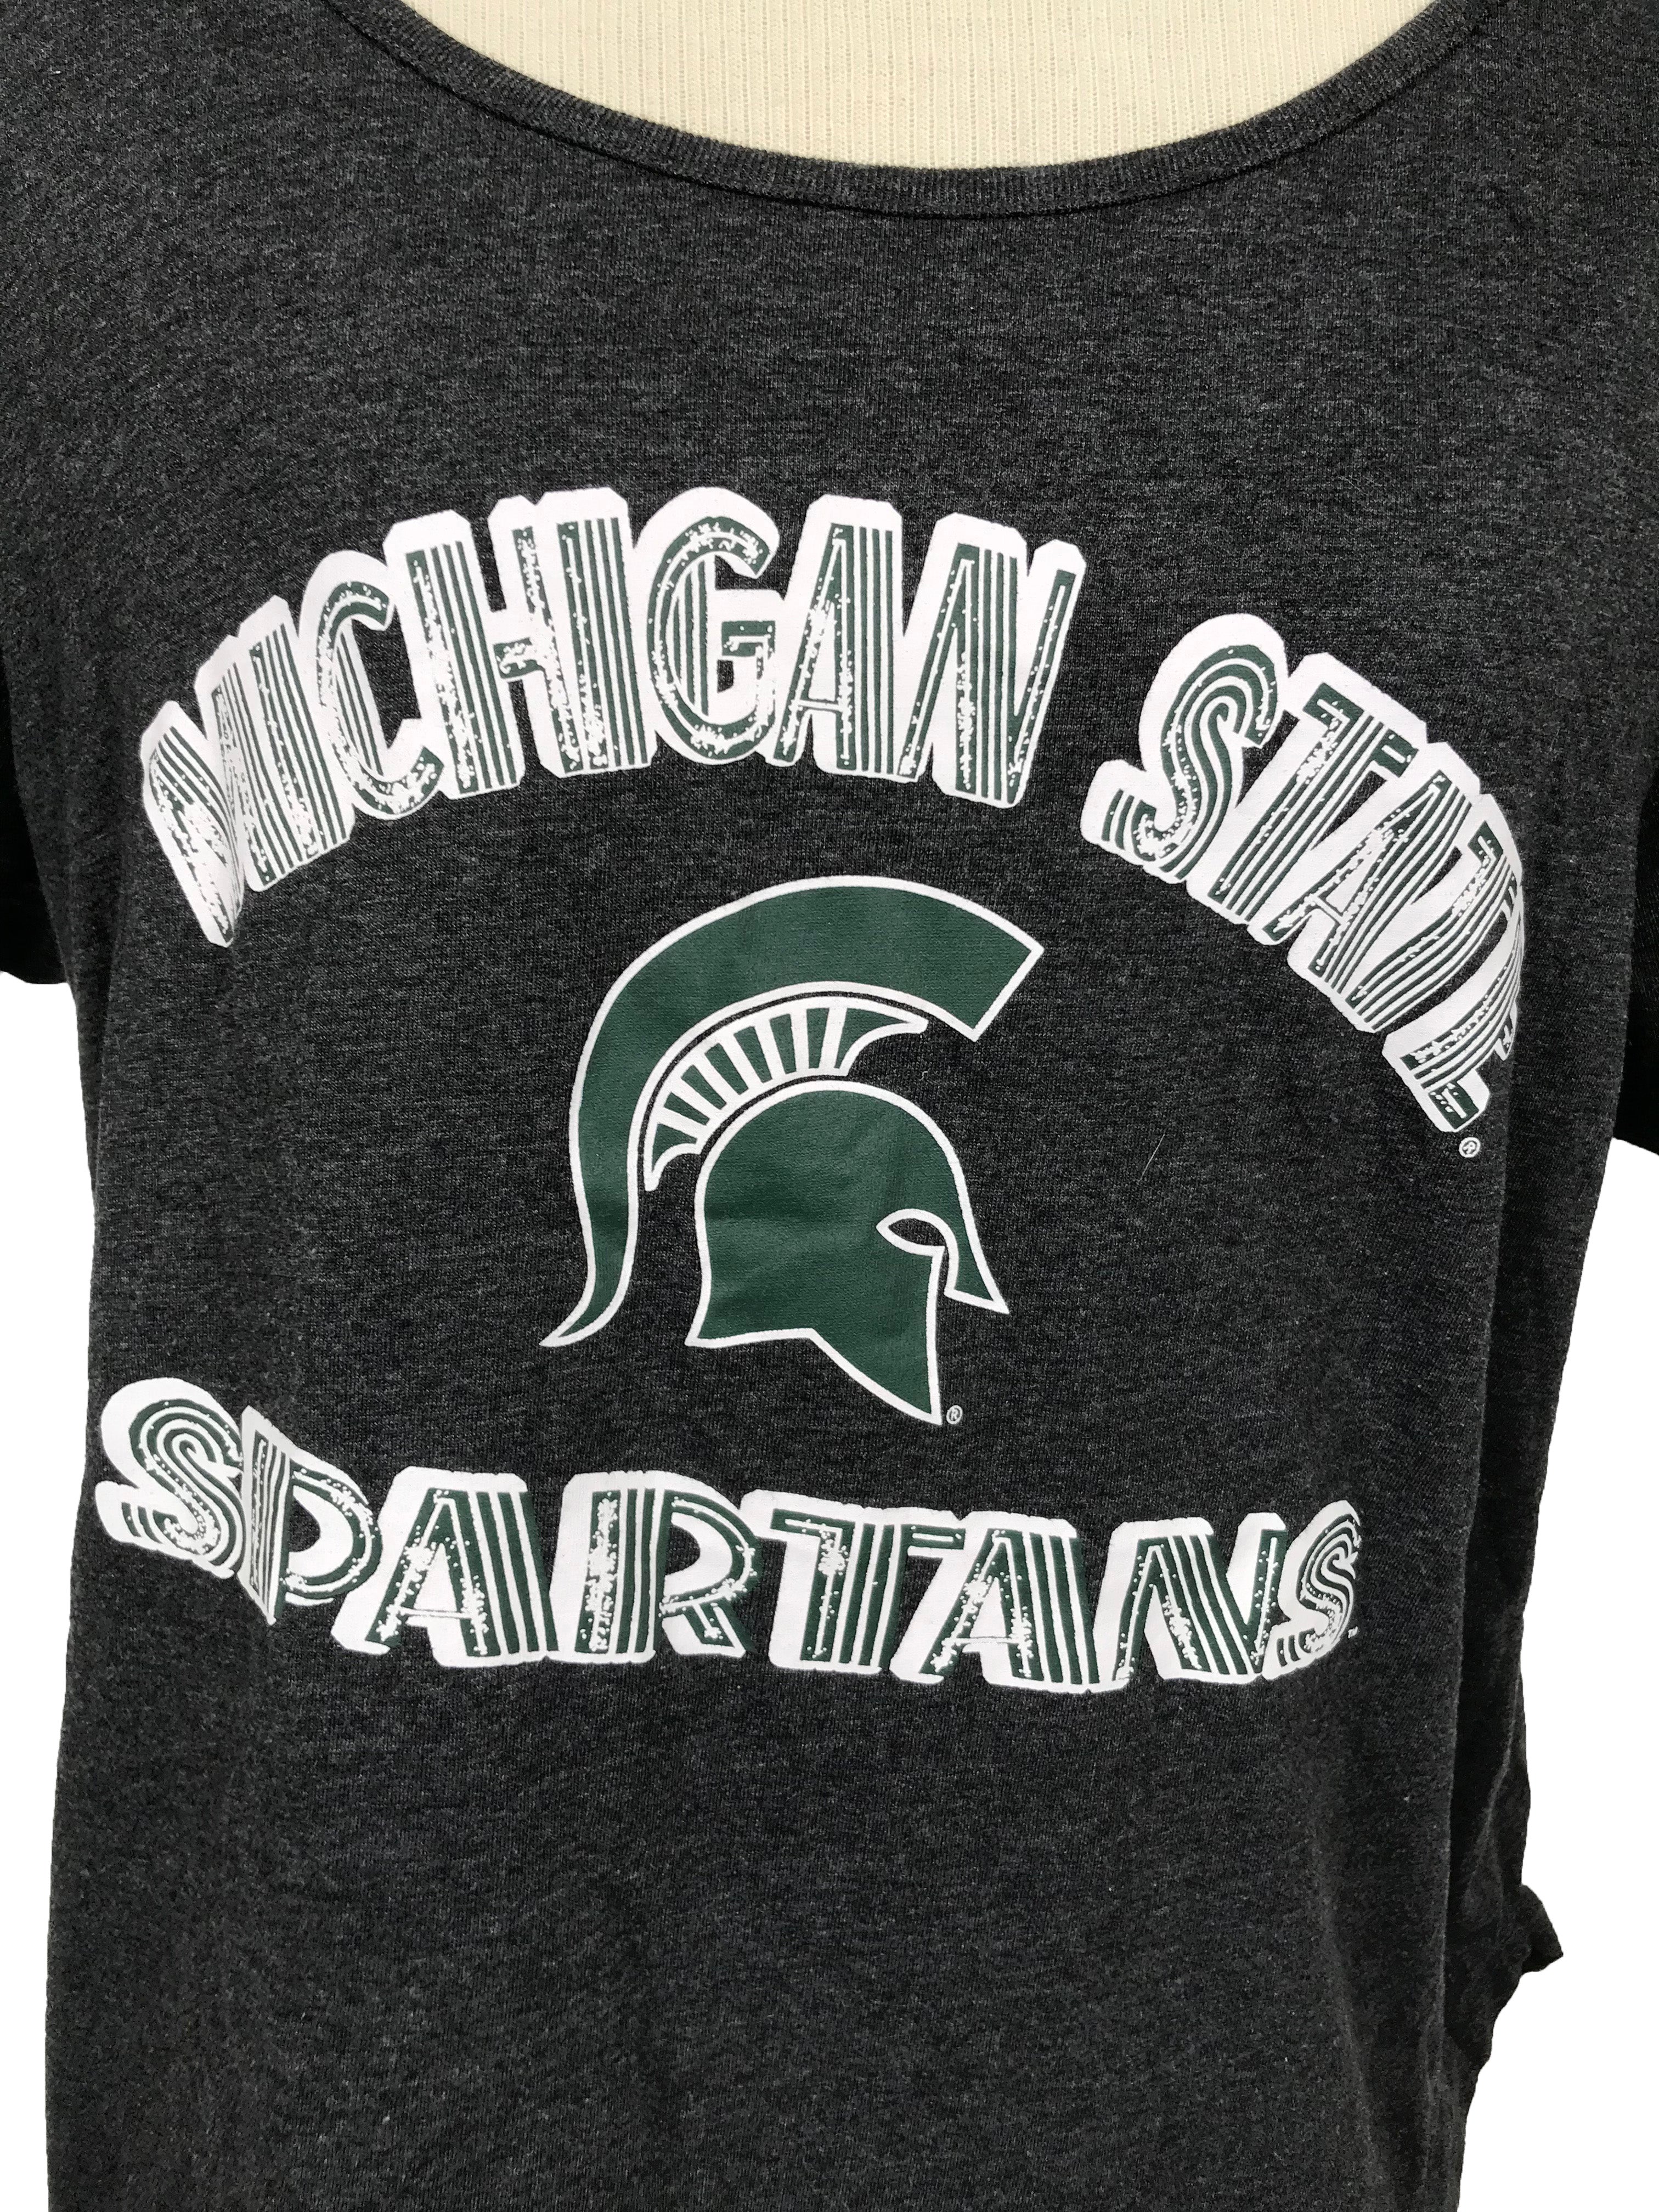 Michigan State University Gray T-Shirt Women's Size XL